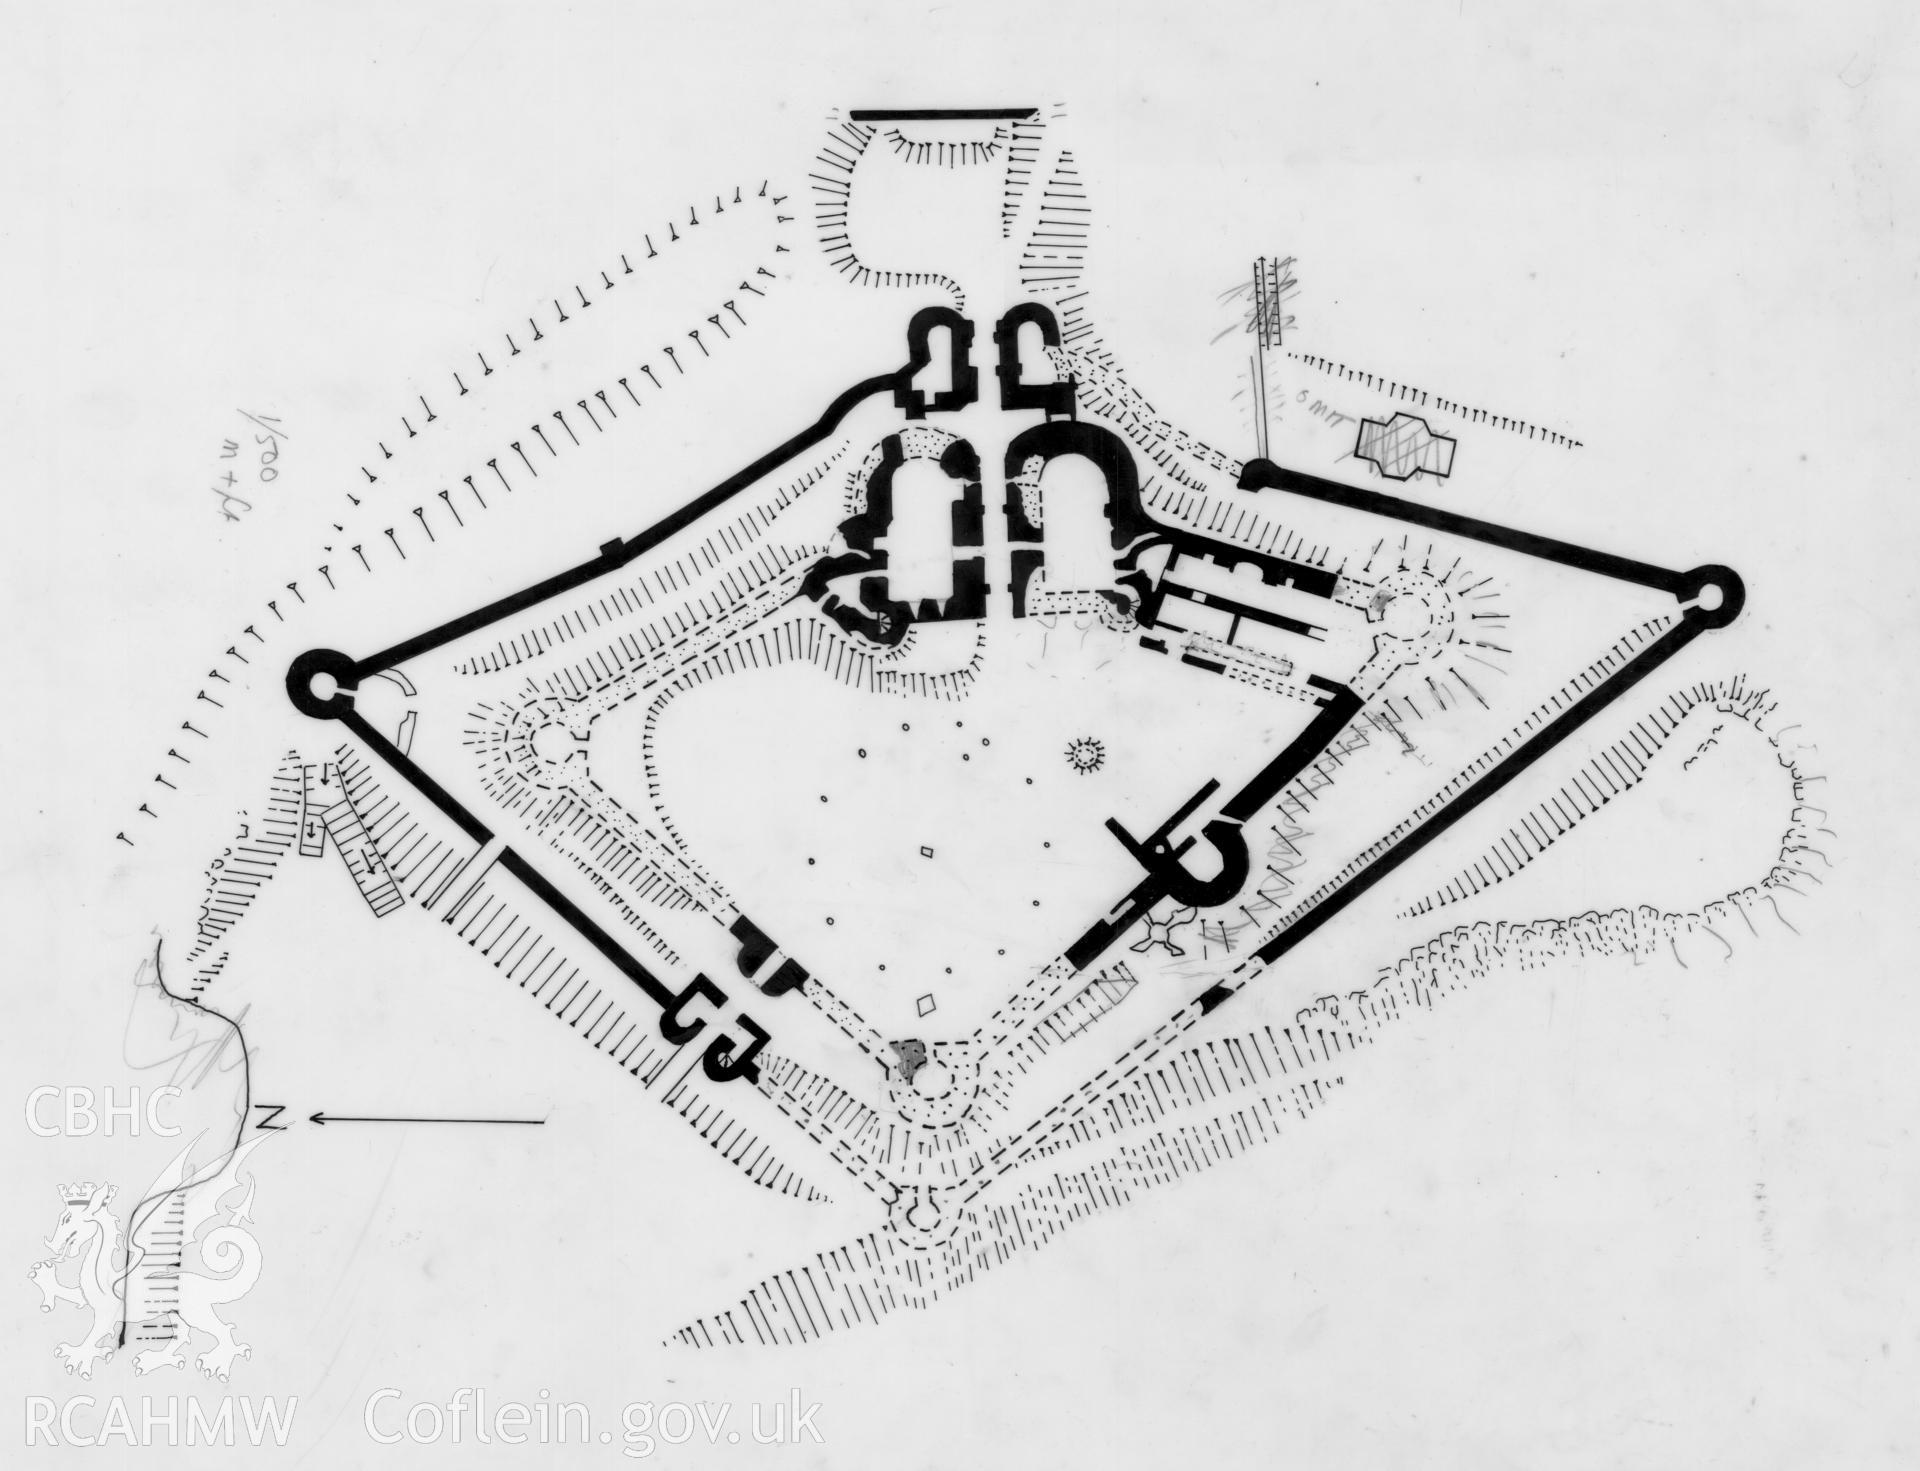 Digital copy of a measured plan of of Aberystwyth Castle produced by Geoff Ward.